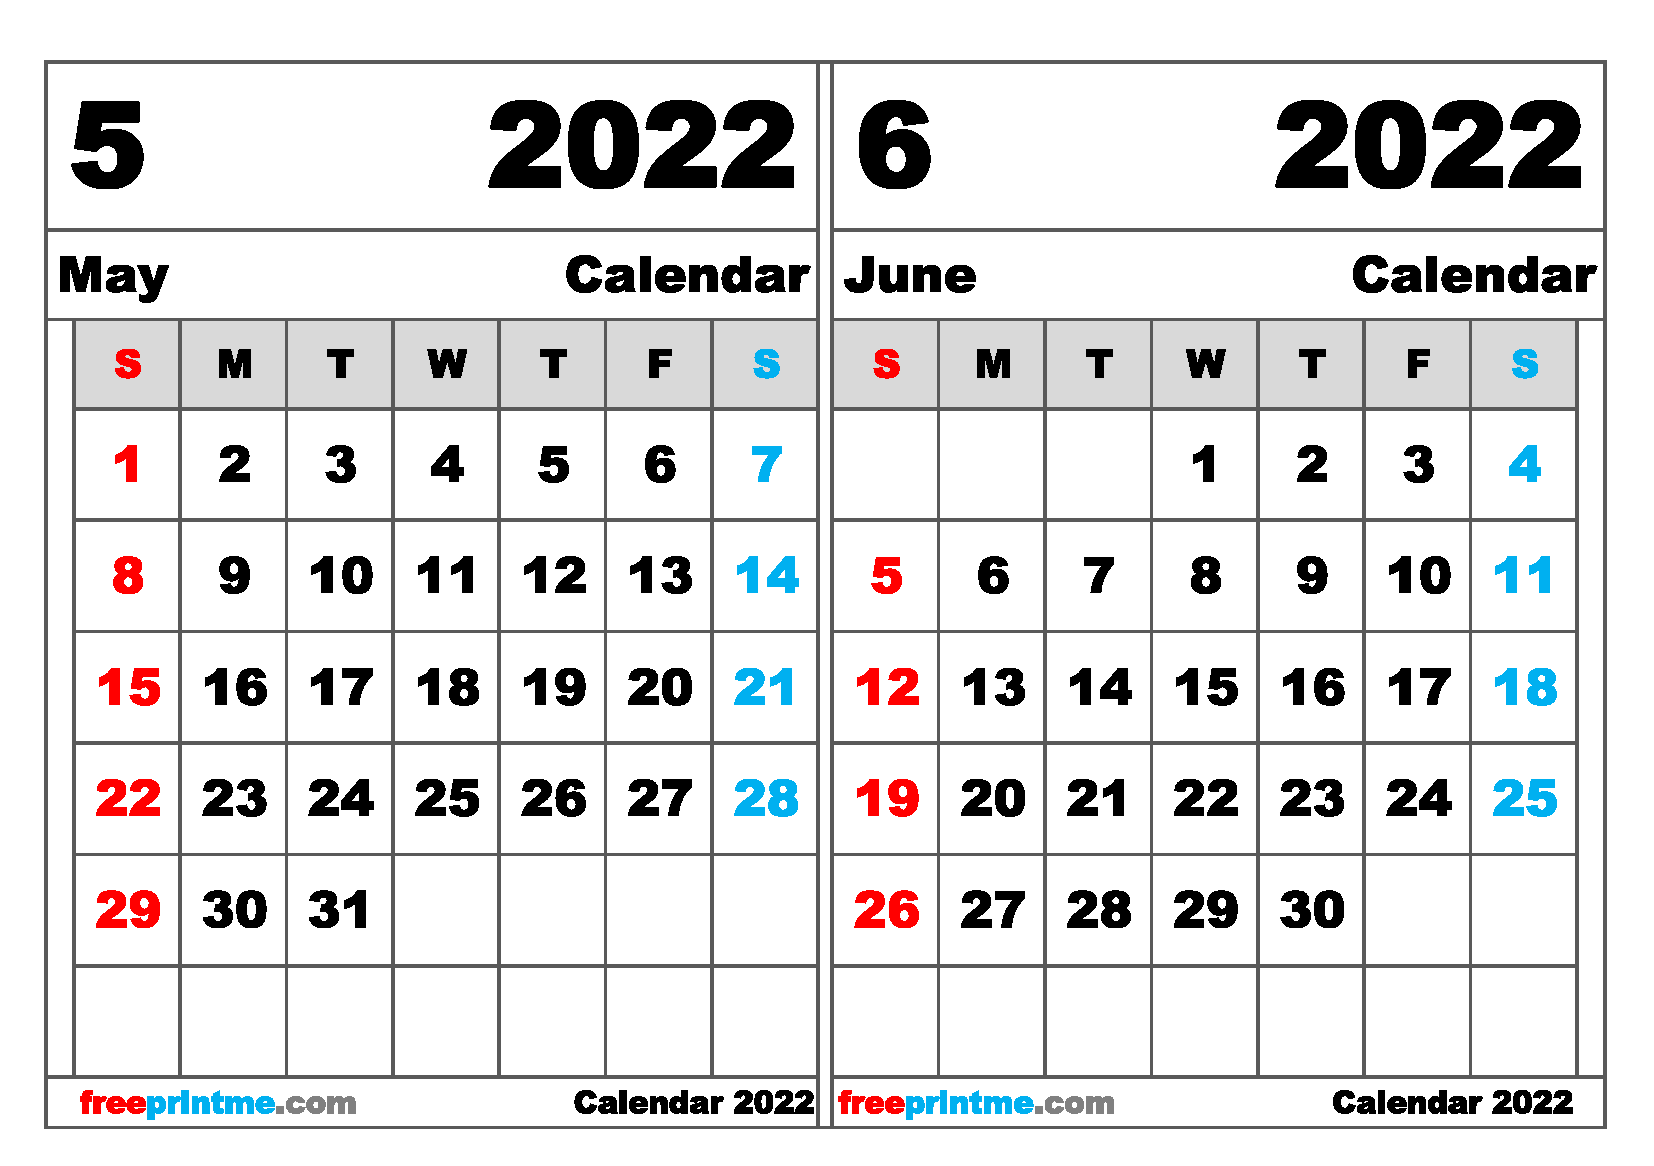 Free Printable Calendar 2022 May And June.Free May June 2022 Calendar Printable Variety Of Sizes